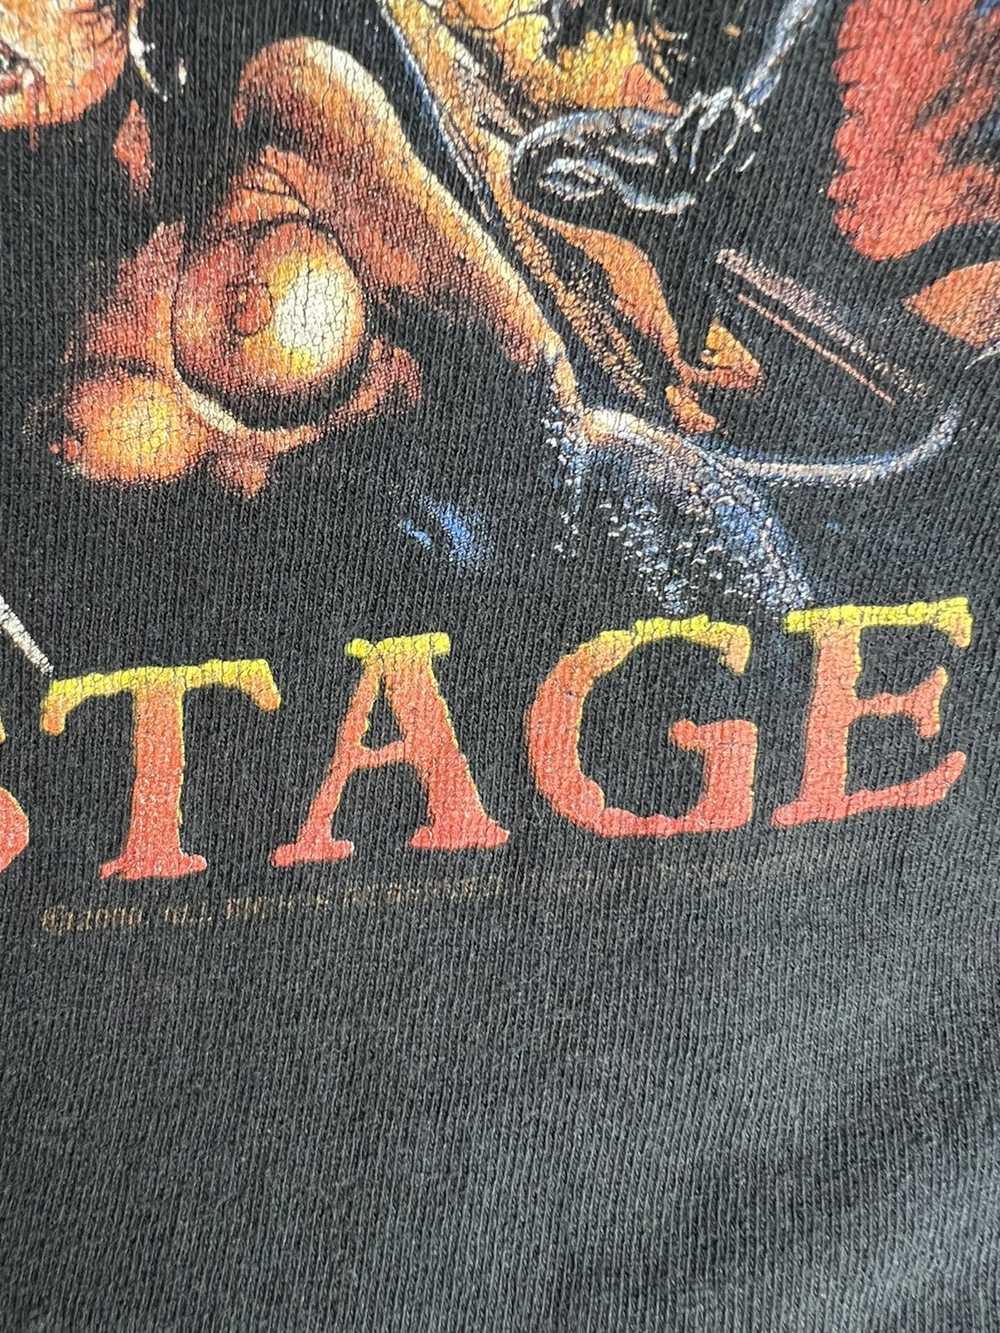 Band Tees × Vintage 1999 Manowar Hell on Stage - image 3